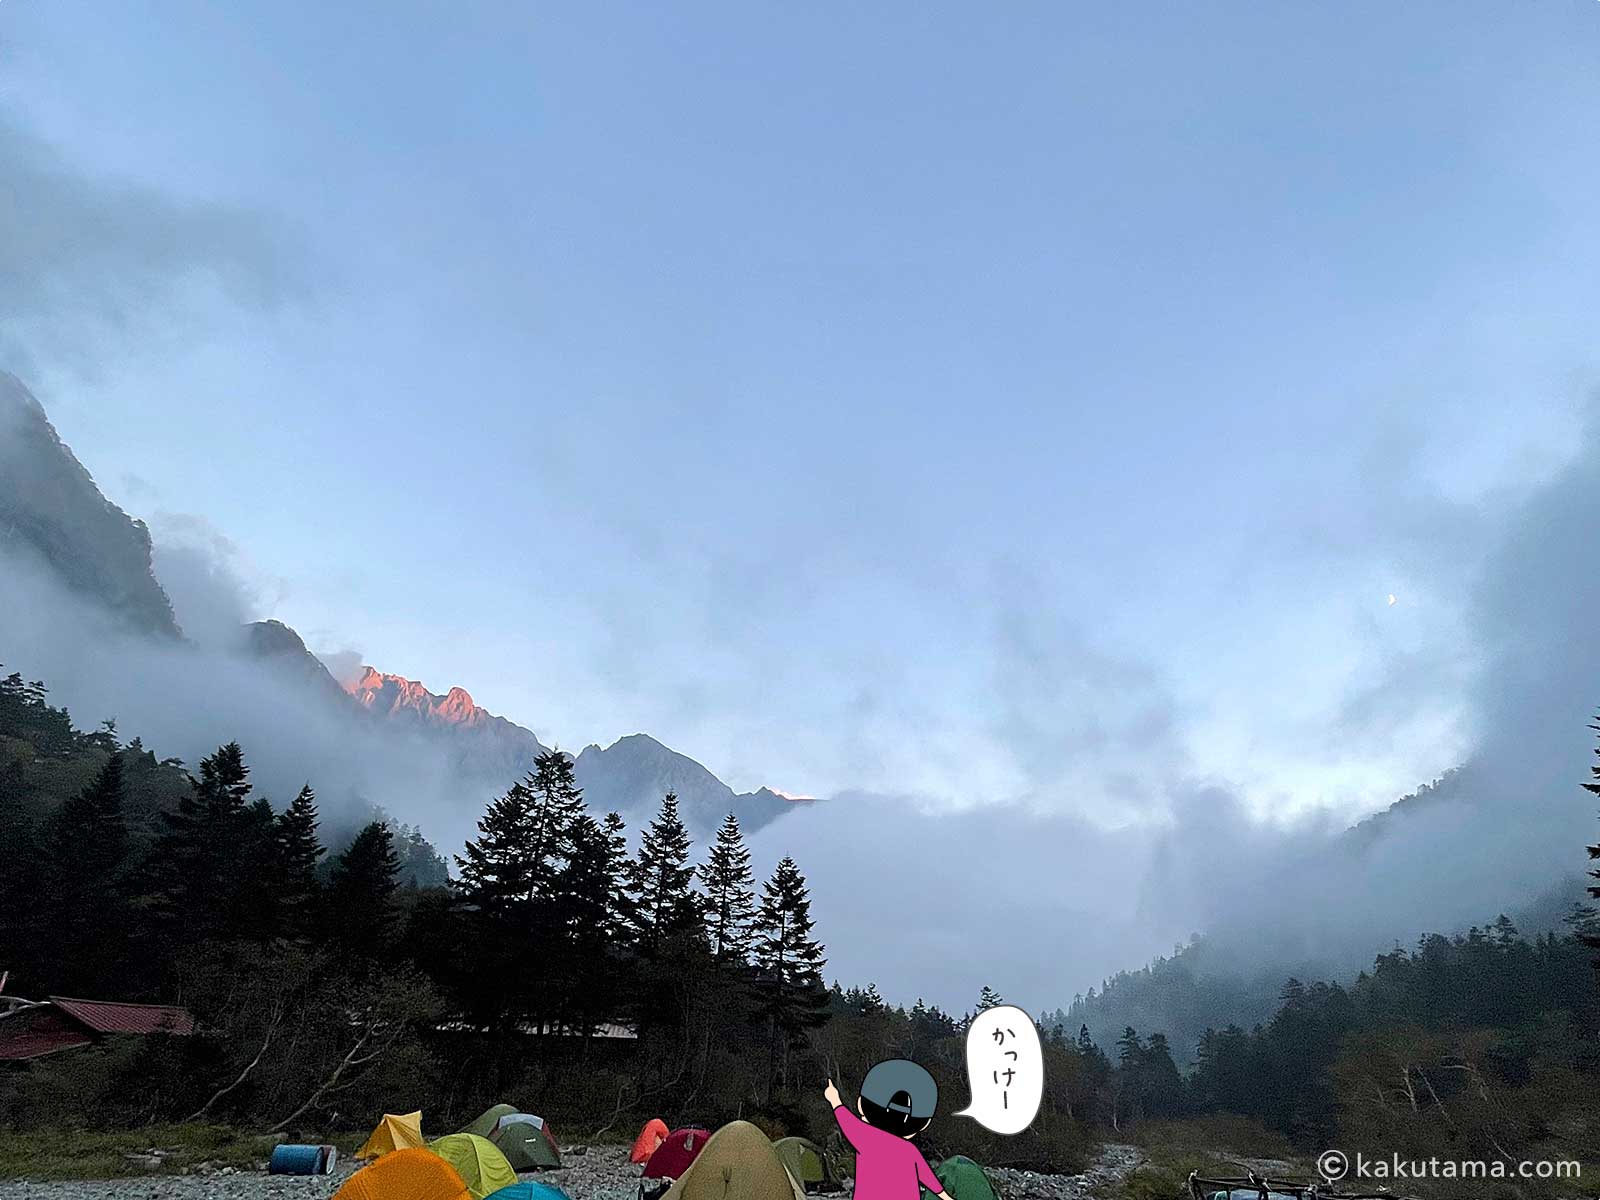 槍平小屋のテント場から見た稜線写真と登山者のイラスト